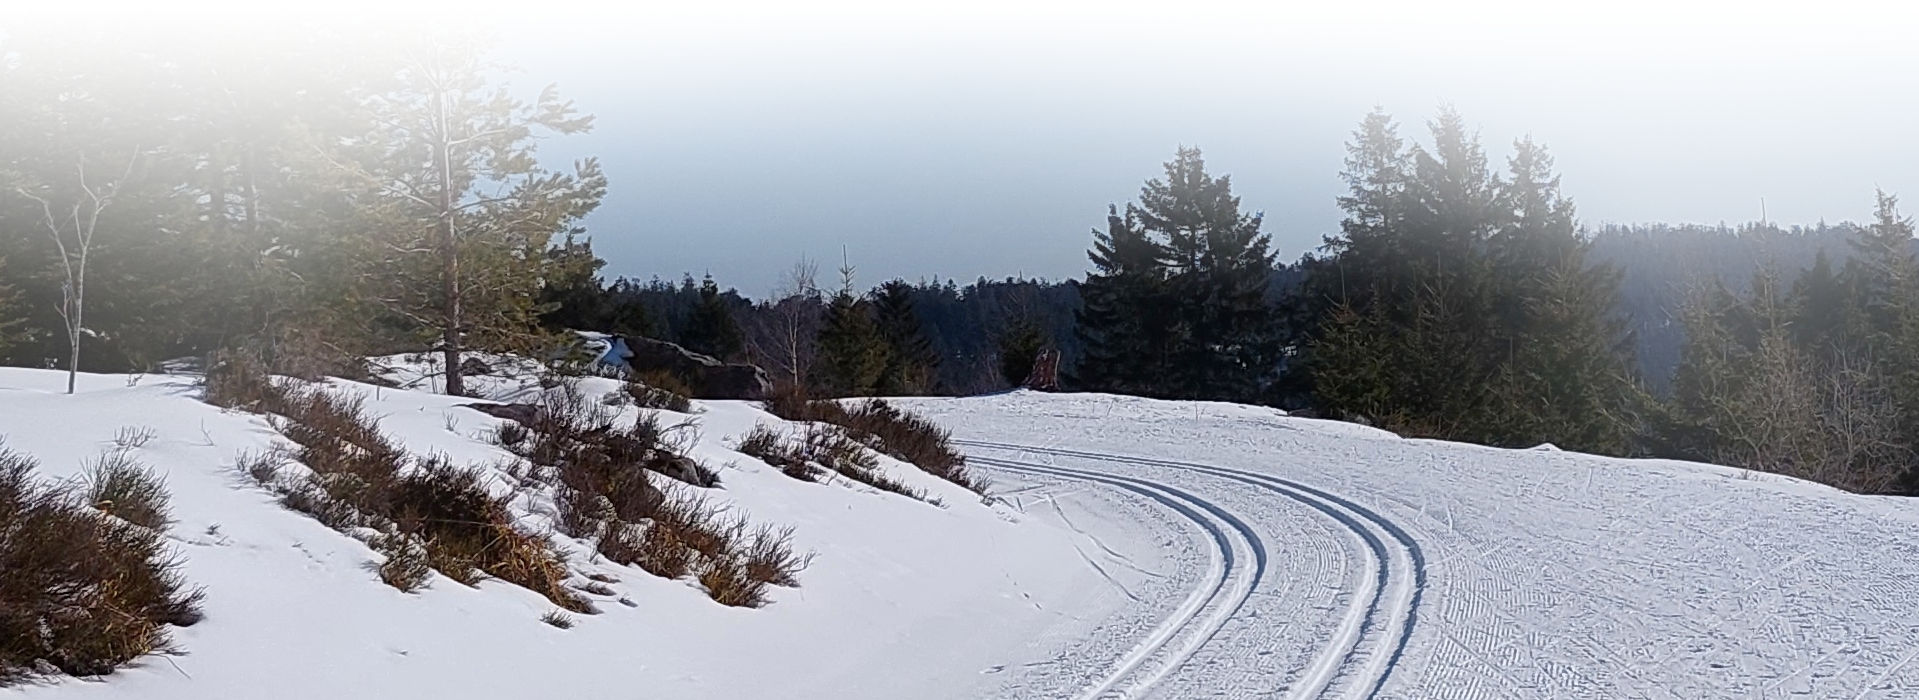 Ein verschneiter Waldweg mit einer glatt gewalzten Oberfläche und zwei tiefen, parallelen Spuren, die um eine Kurve führen. Der Himmel im Hintergrund ist blau, die Sonne scheint.